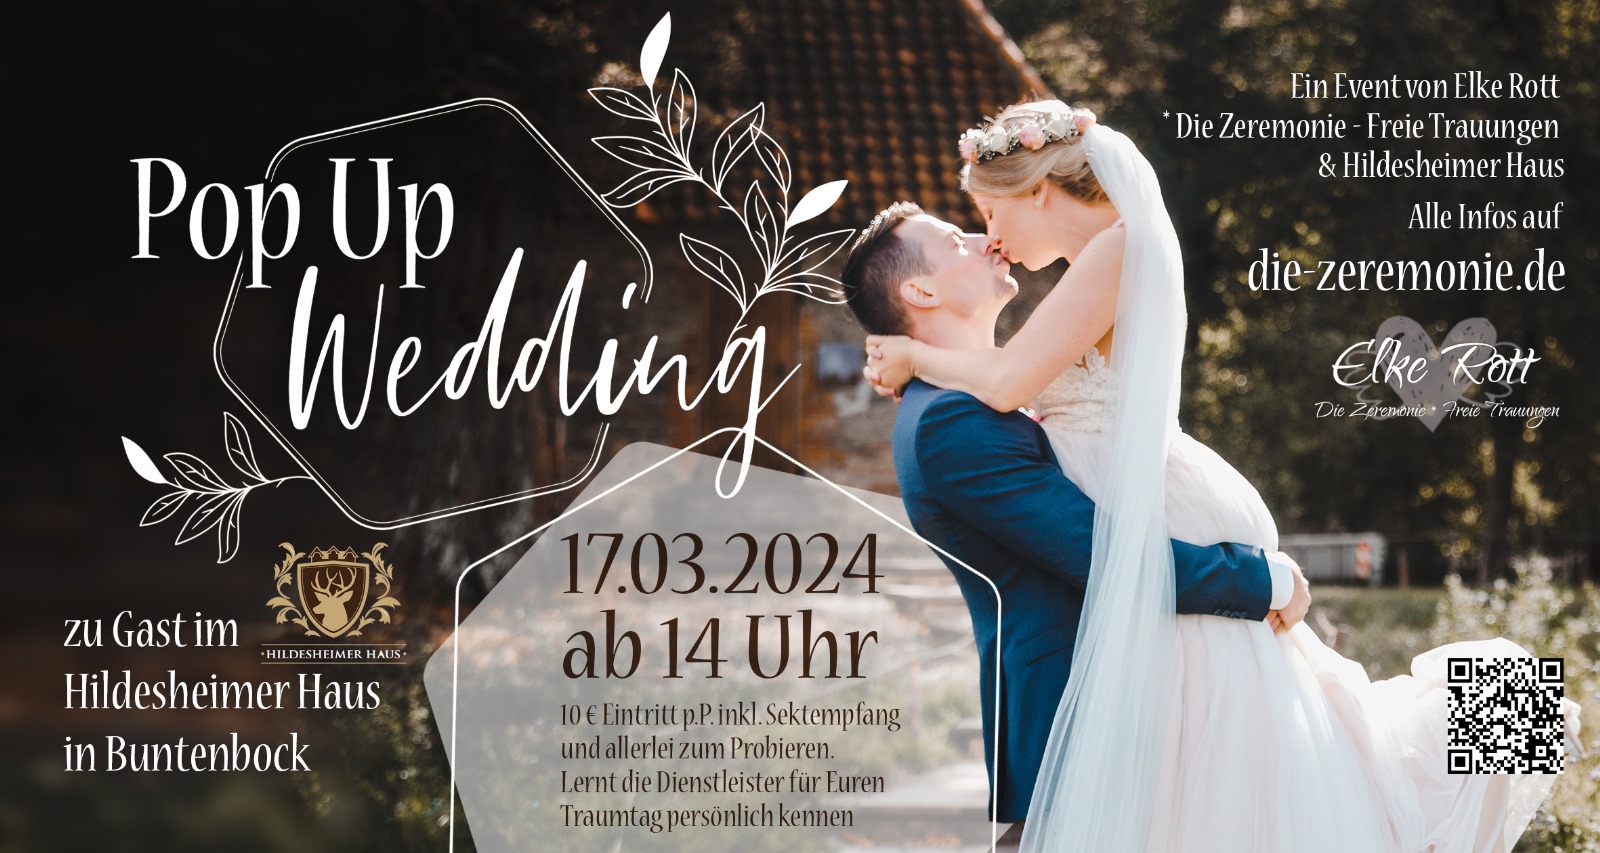 PopUp Wedding Hochzeits-Event im Hildesheimer Haus Buntenbock